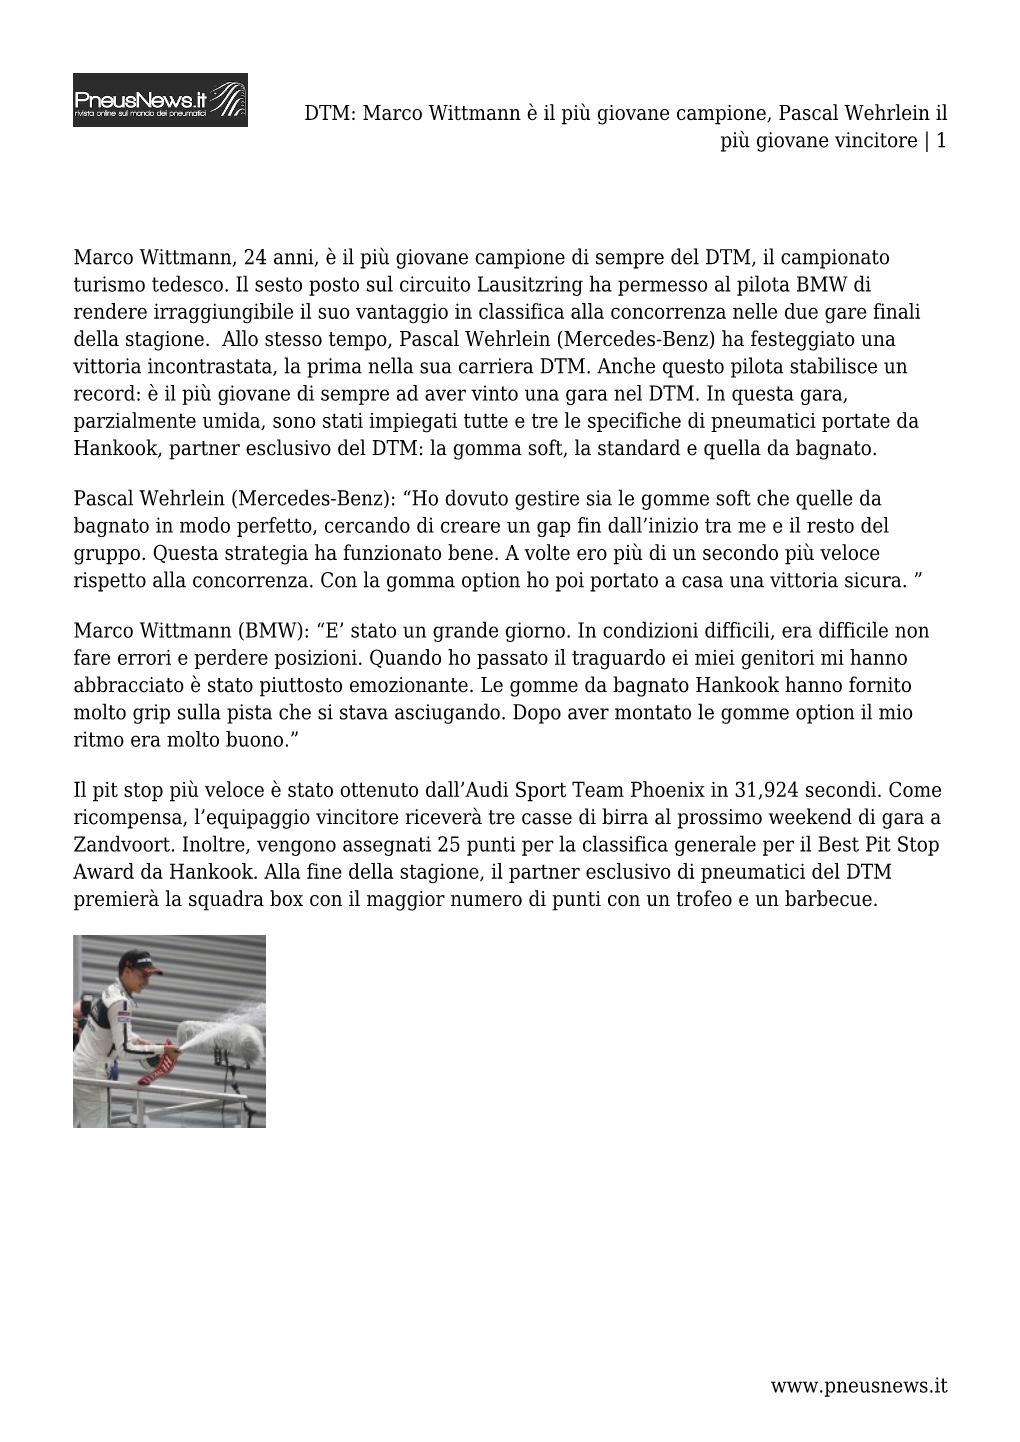 DTM: Marco Wittmann È Il Più Giovane Campione, Pascal Wehrlein Il Più Giovane Vincitore | 1